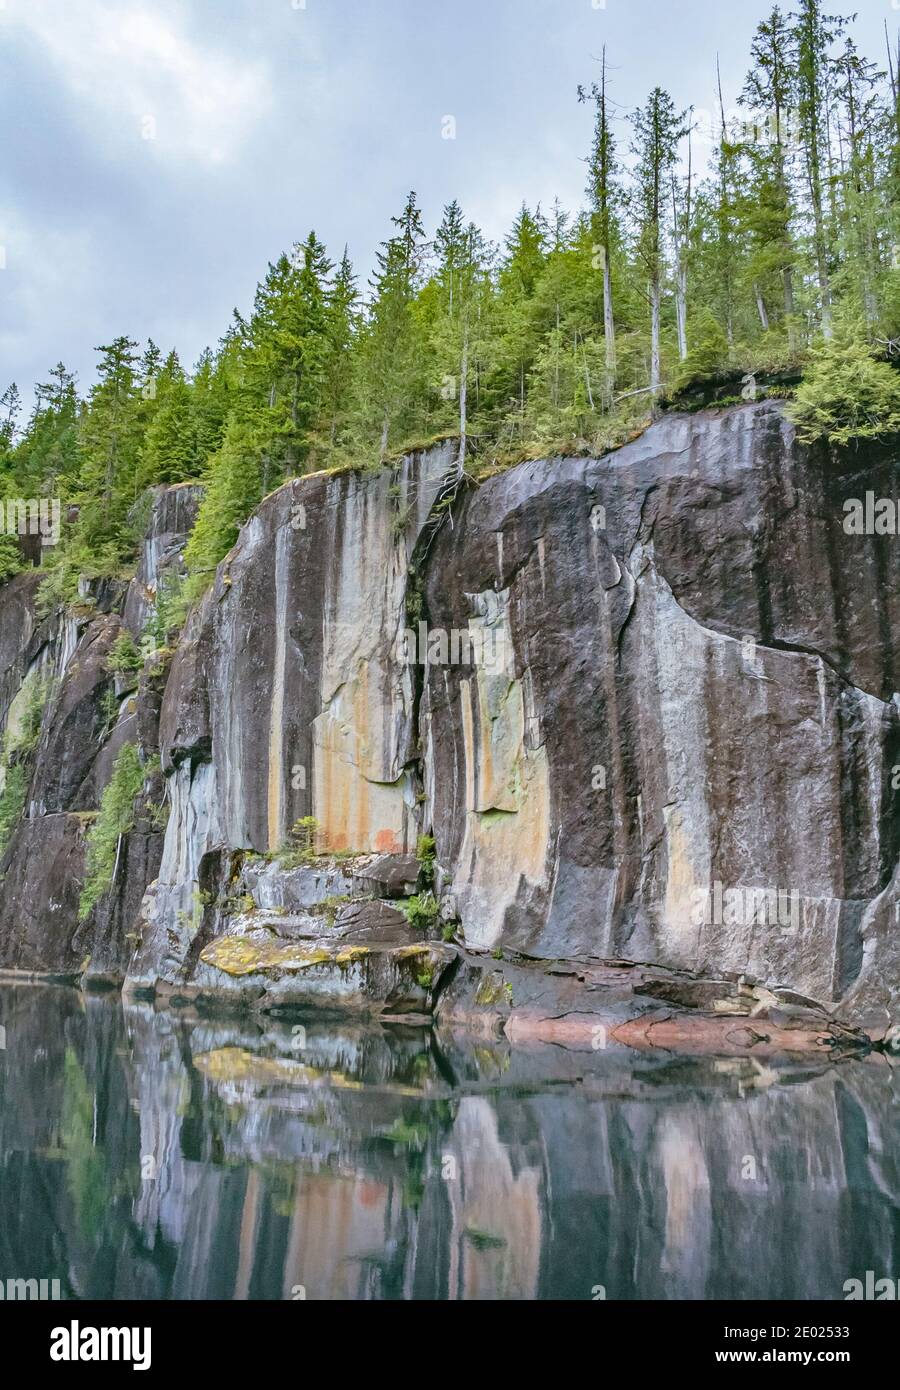 Coronada por un denso bosque, los escarpados acantilados verticales se reflejan en el agua que todavía se encuentra debajo. Un pictograma descolorido es visible (Alison Sound, British Columbia). Foto de stock